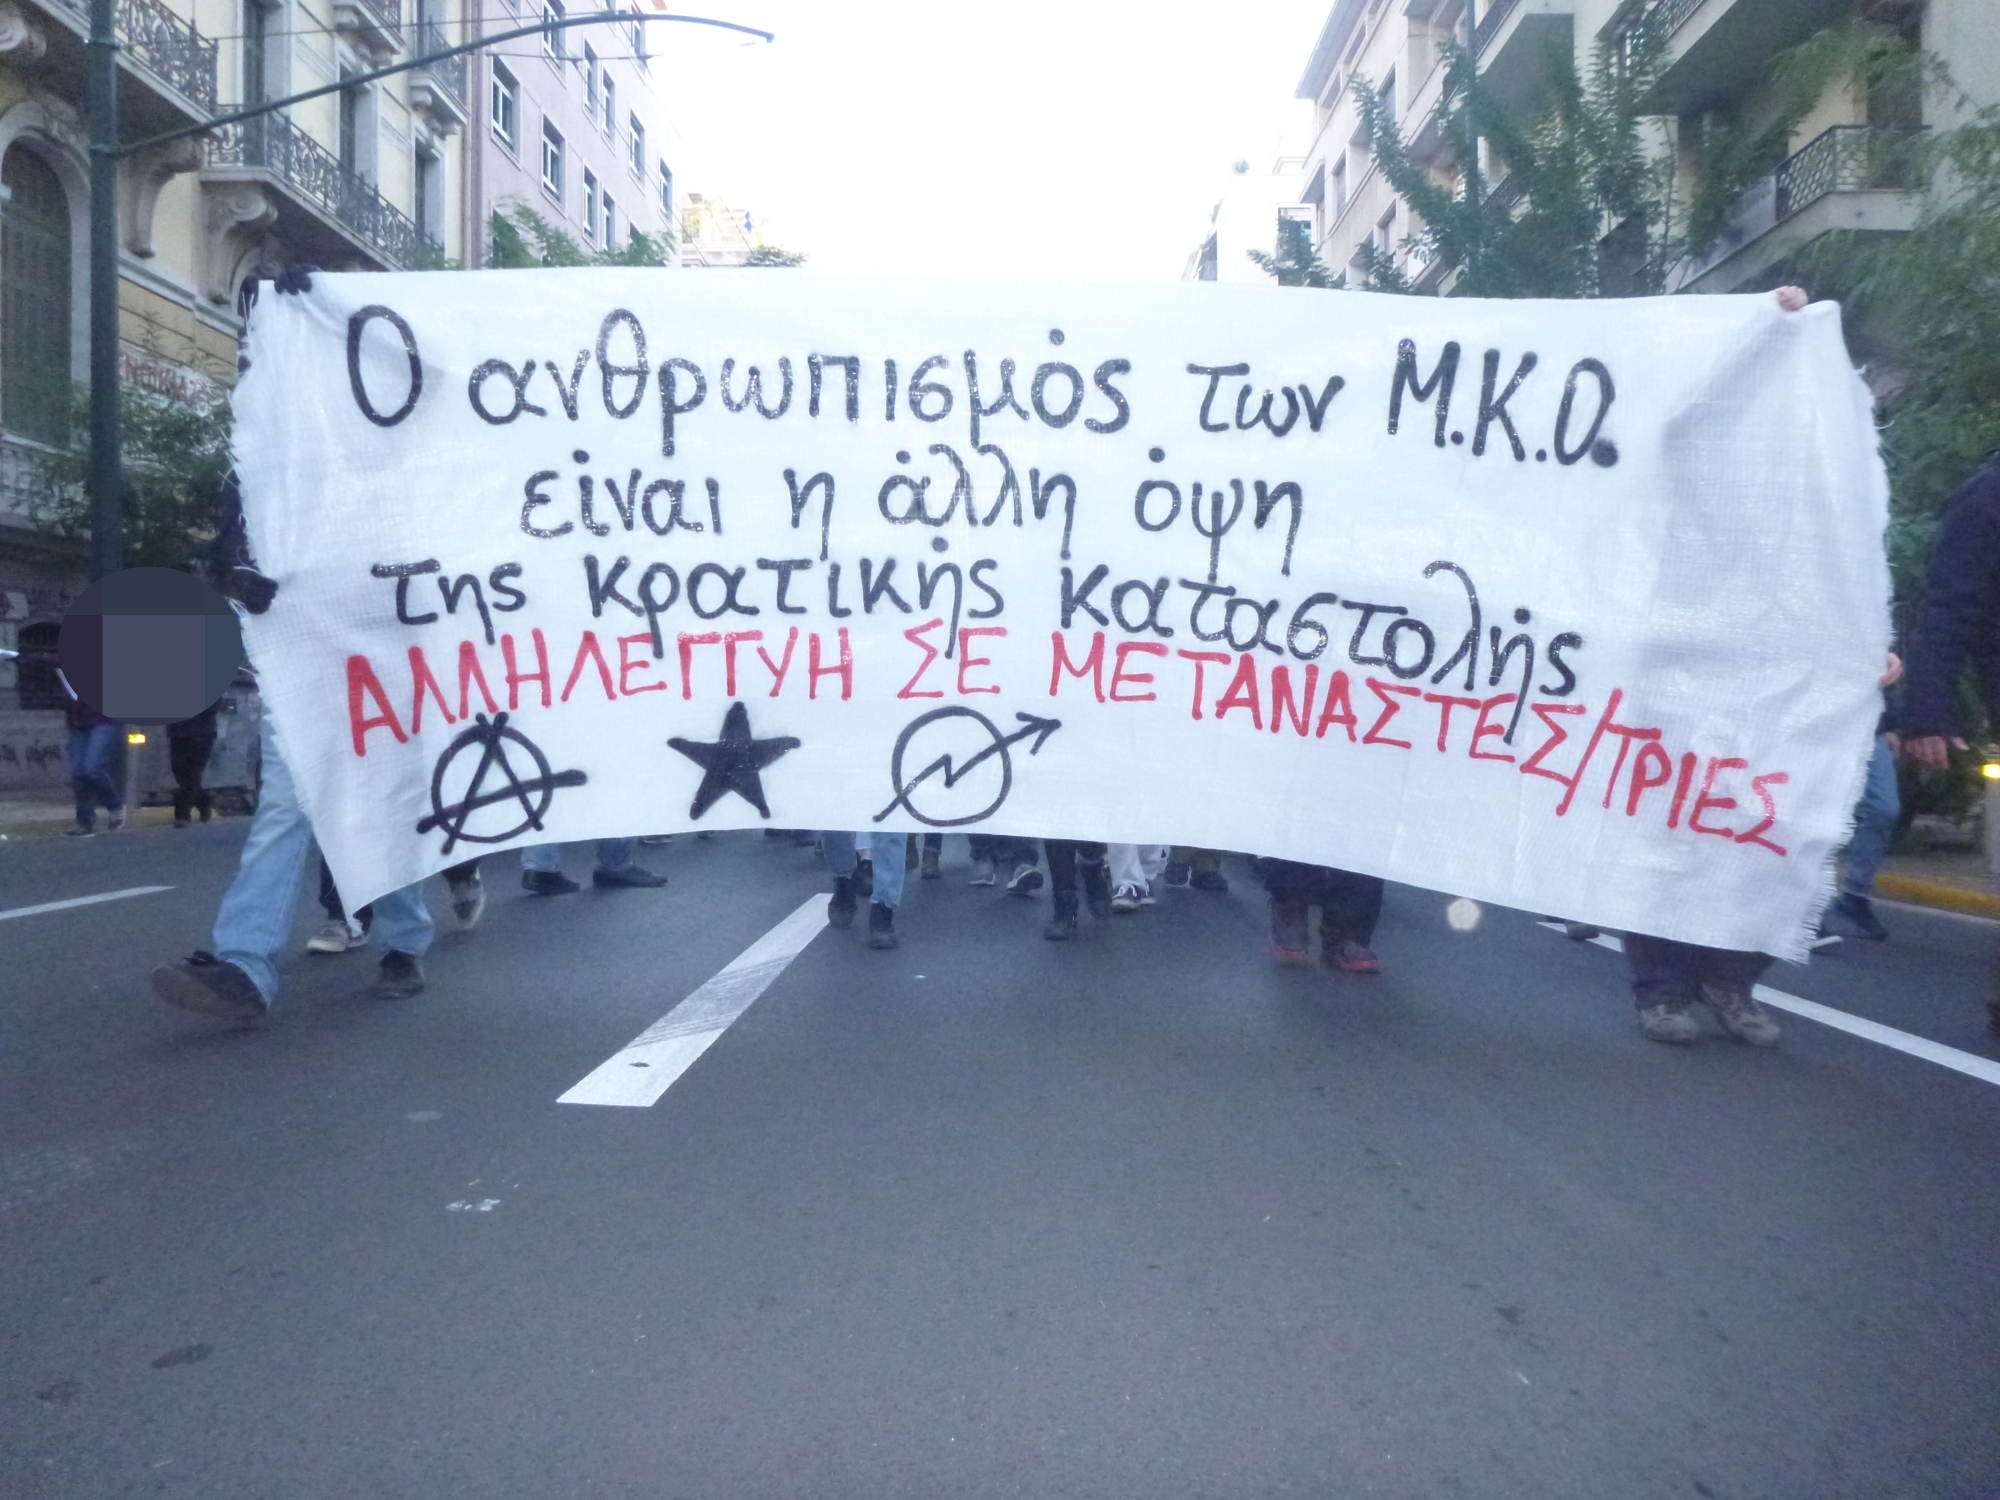 Αθήνα: Παρέμβαση στα γραφεία της Μ.Κ.Ο. PRAXIS [03/11]